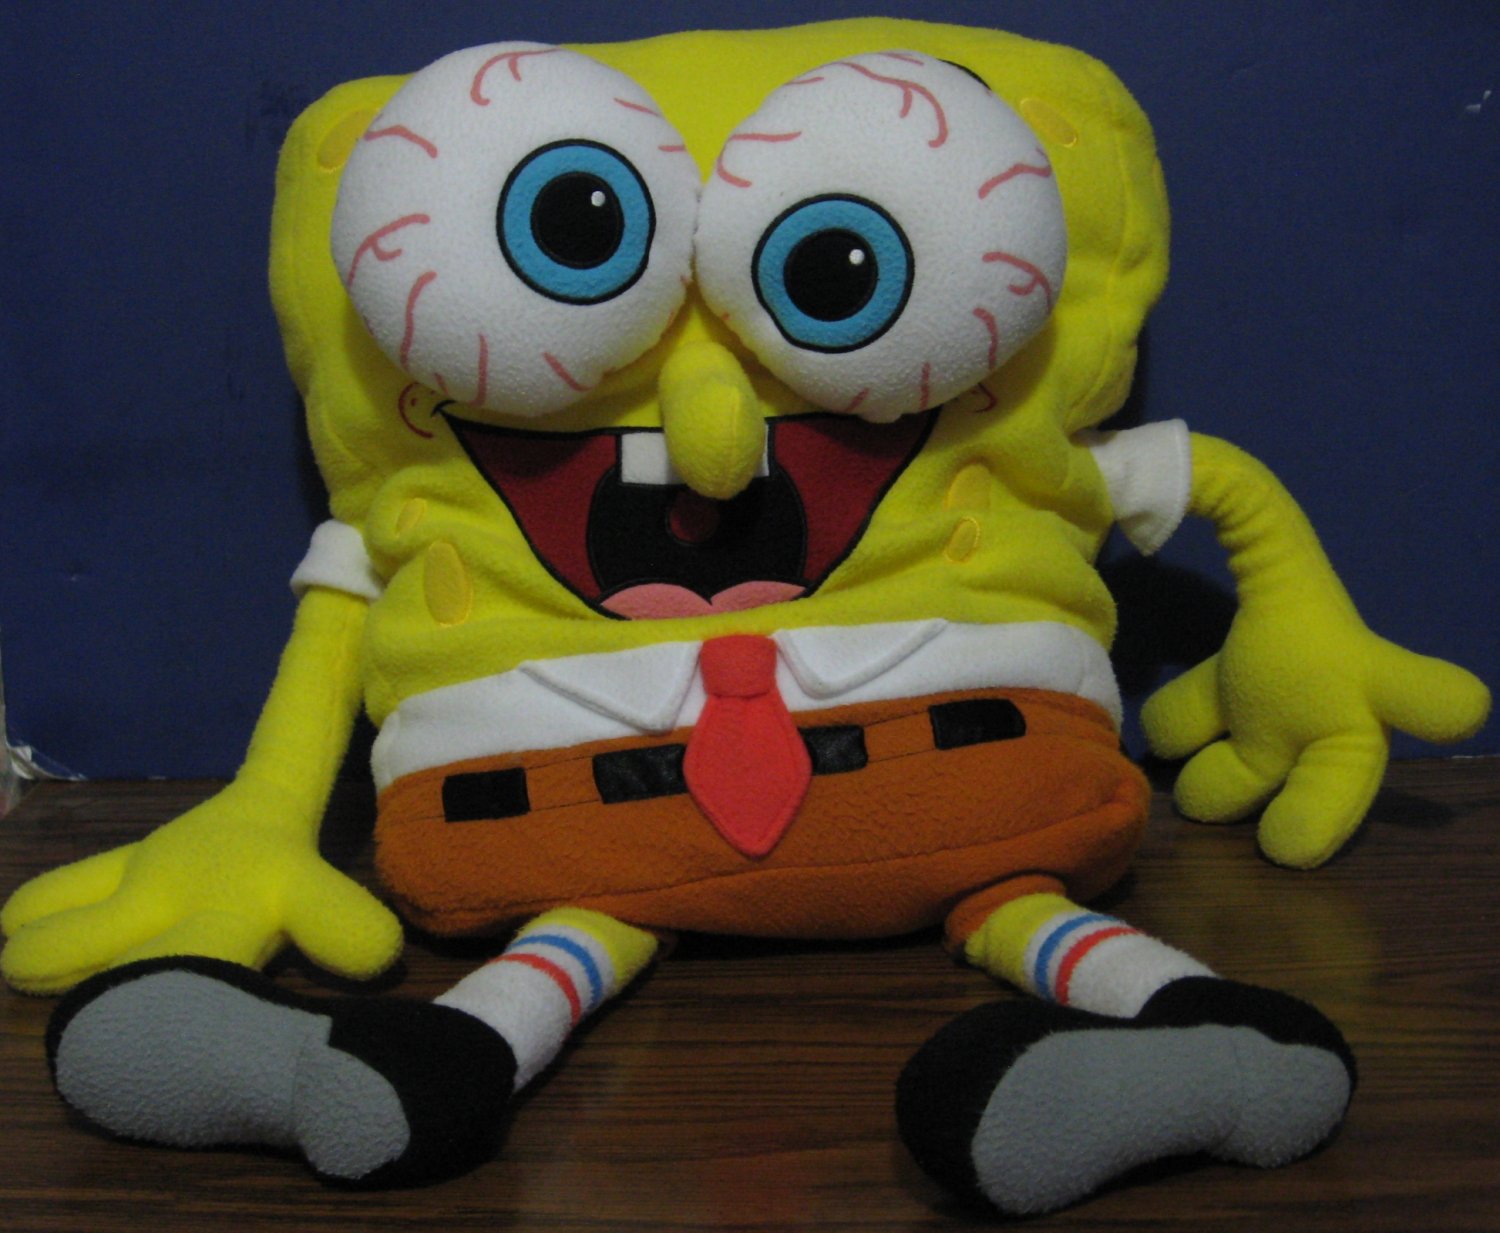 giant stuffed spongebob